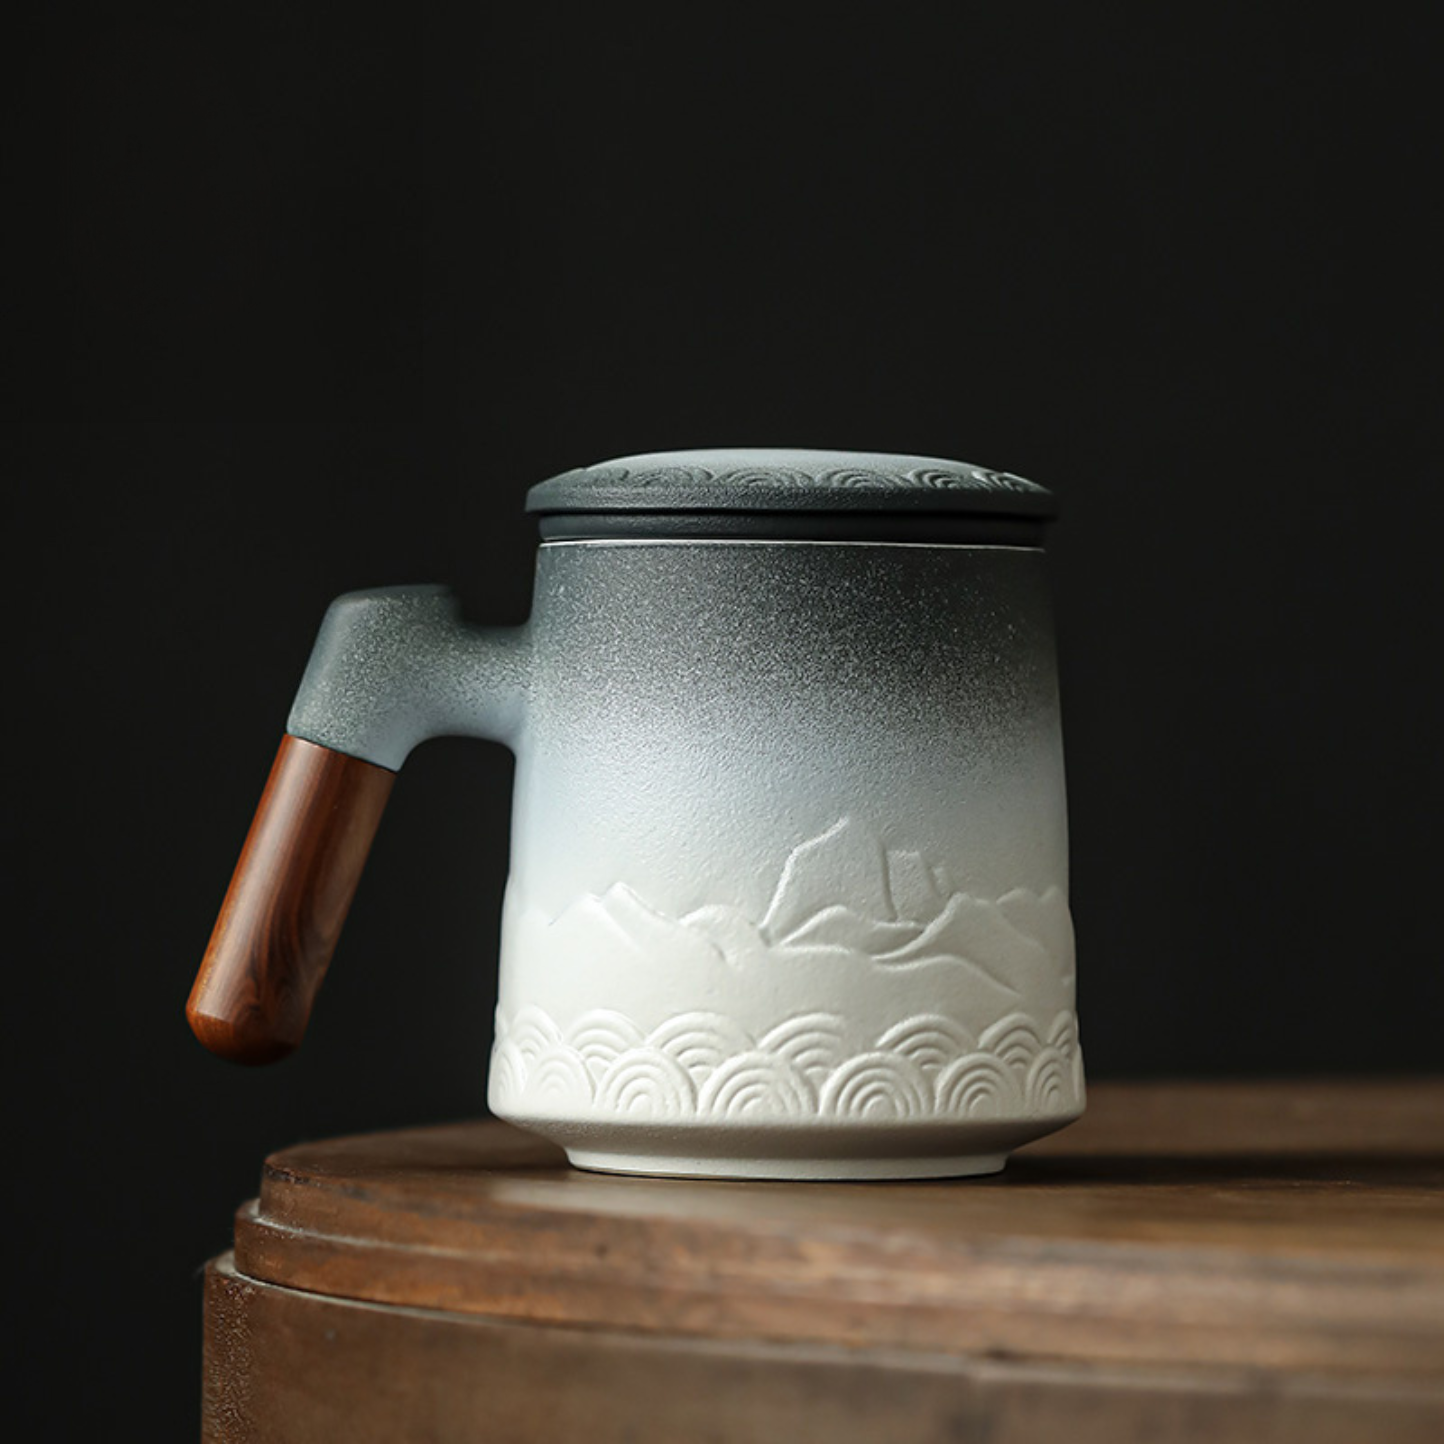 Zen Mountain Tea Infuser Mug